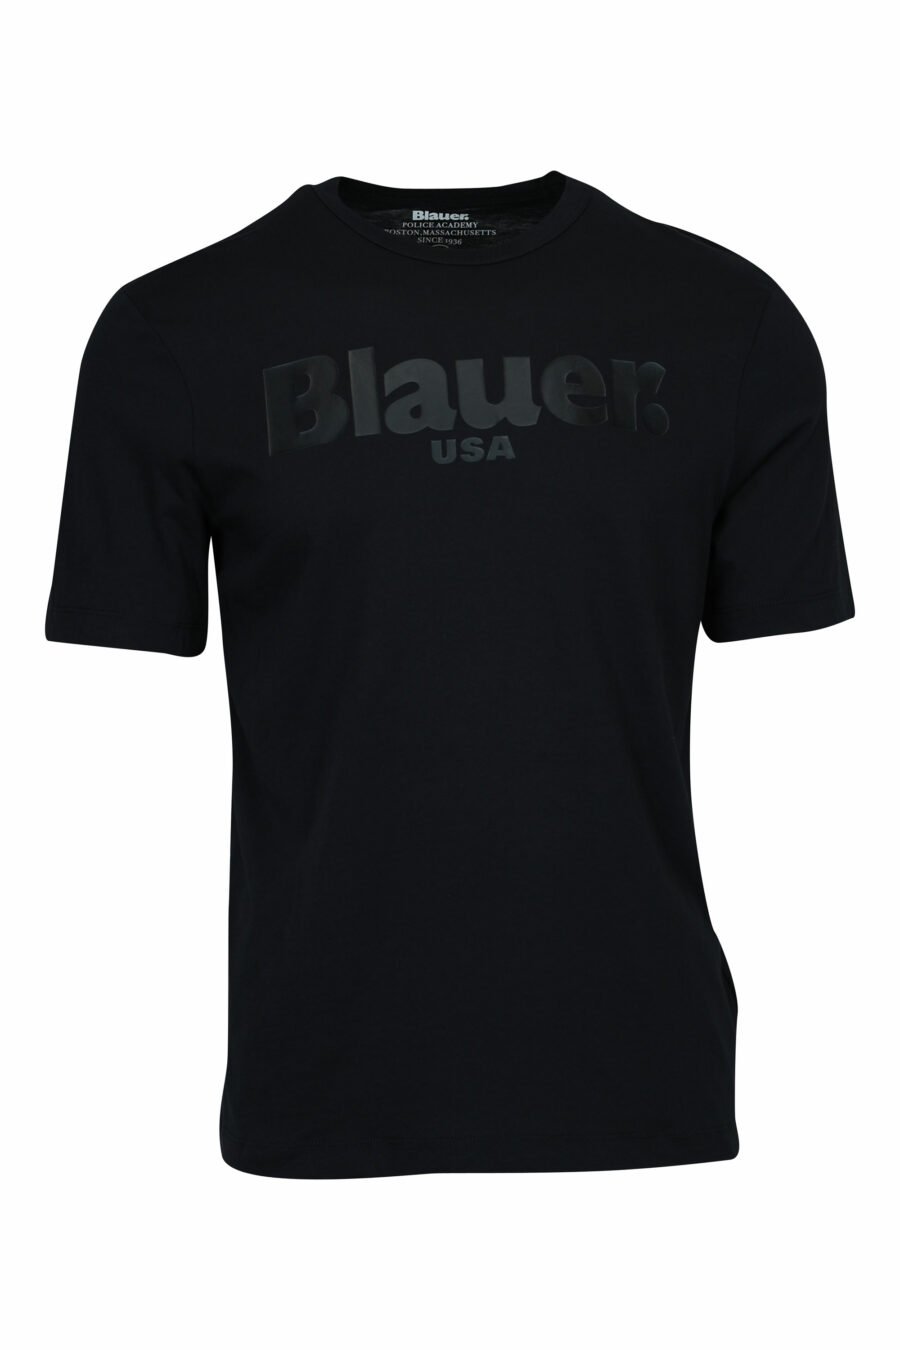 Schwarzes T-Shirt mit monochromem Maxi-Logo in der Mitte - 8058610799021